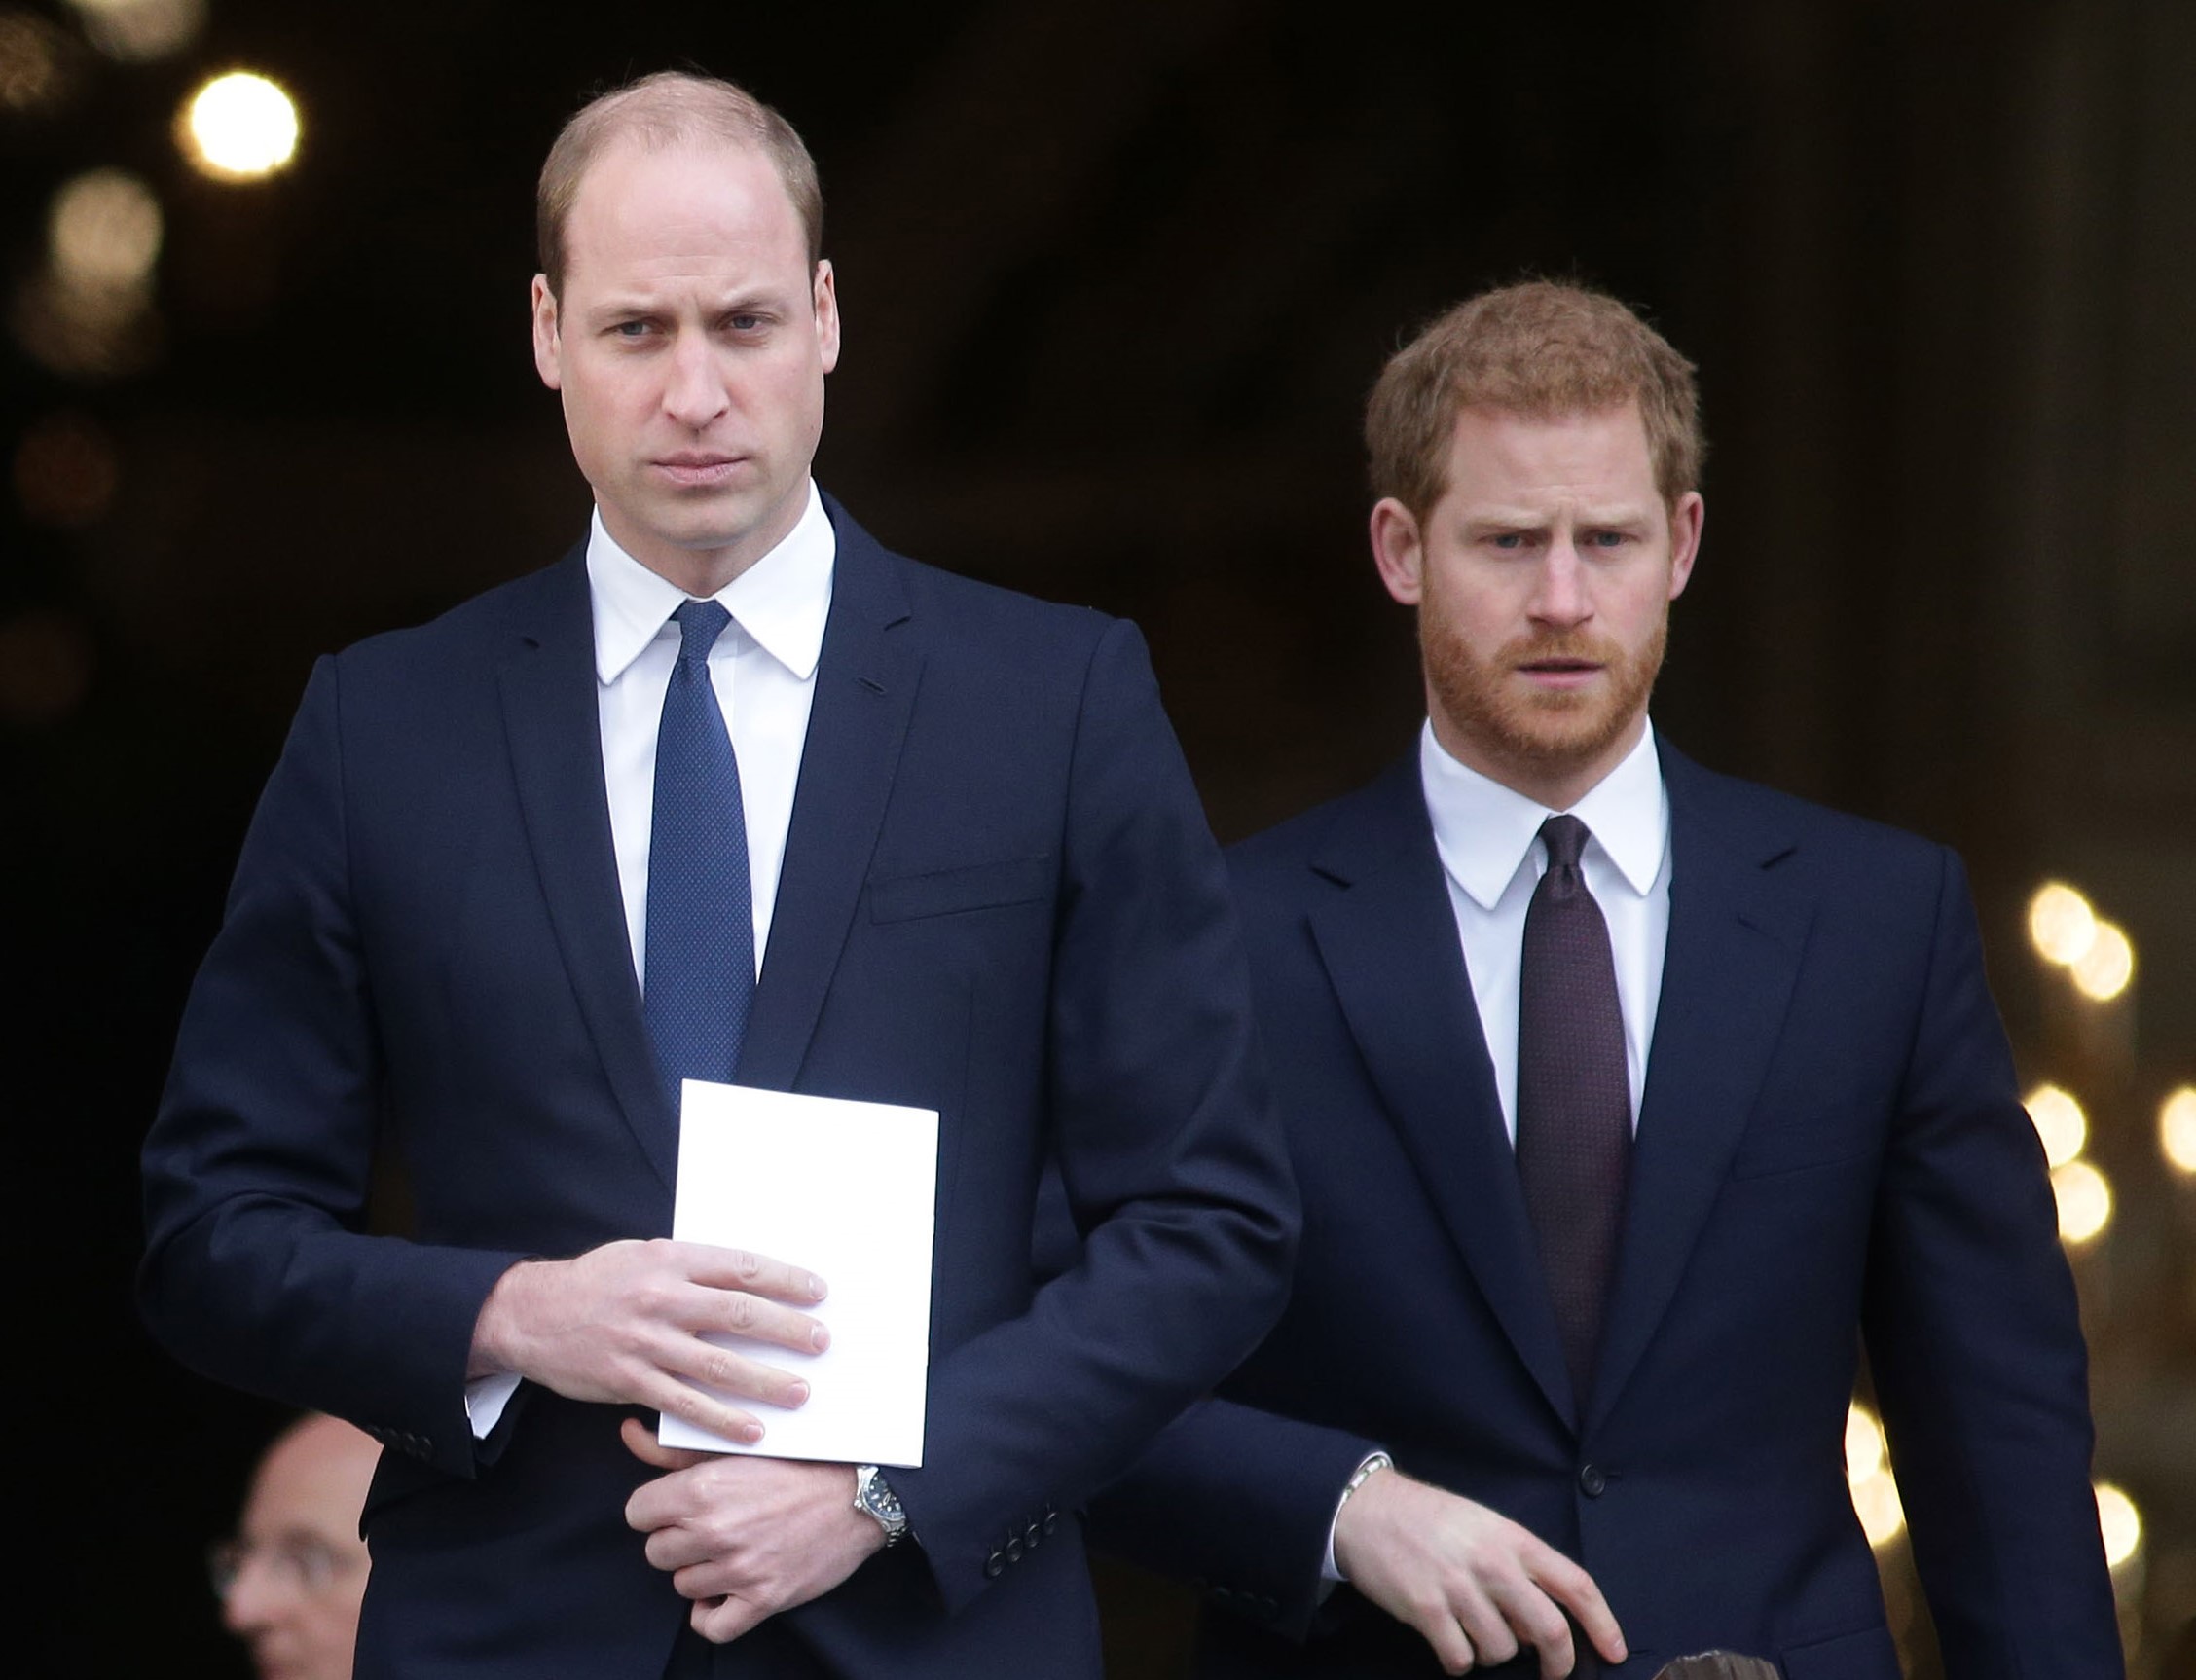 Prinz William, der die Herrschaft der Königin brechen muss, um mit seinem Bruder Prinz Harry fertig zu werden, geht nach dem Besuch des Grenfell Tower National Memorial Service